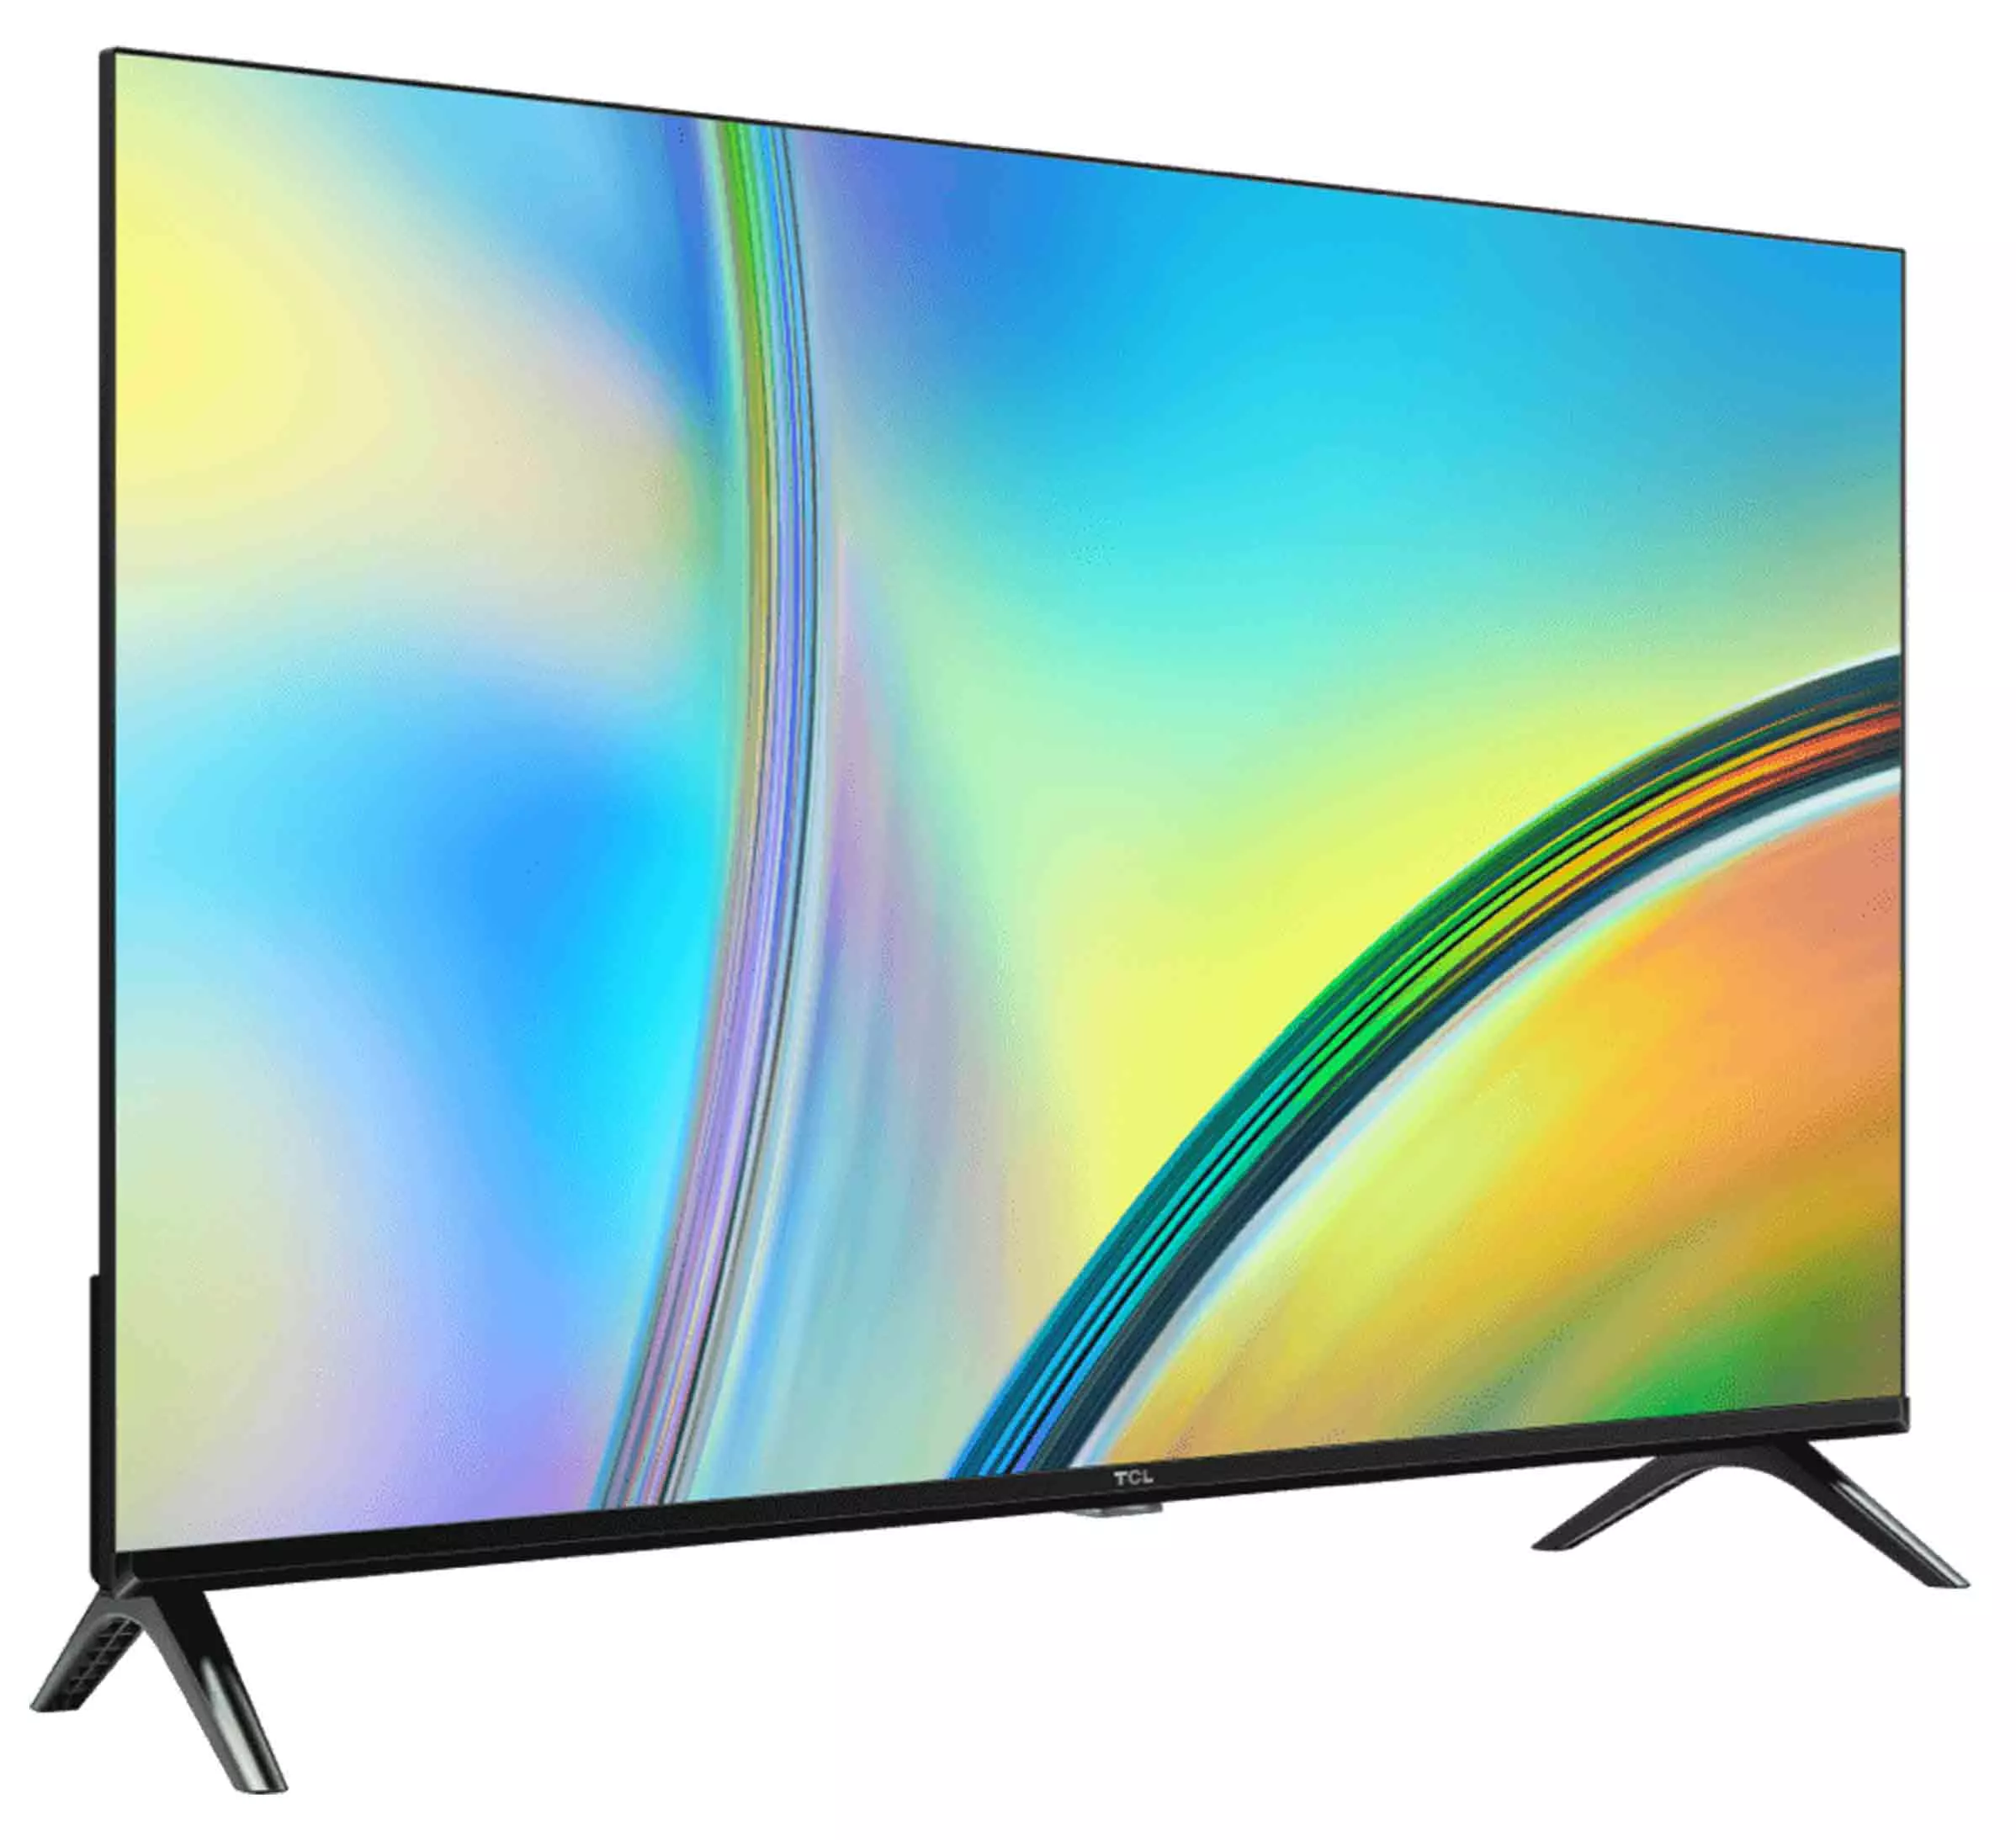 Smart tv de 32p FHD Android TV 32S7000 TCL - La Victoria - Ecuador